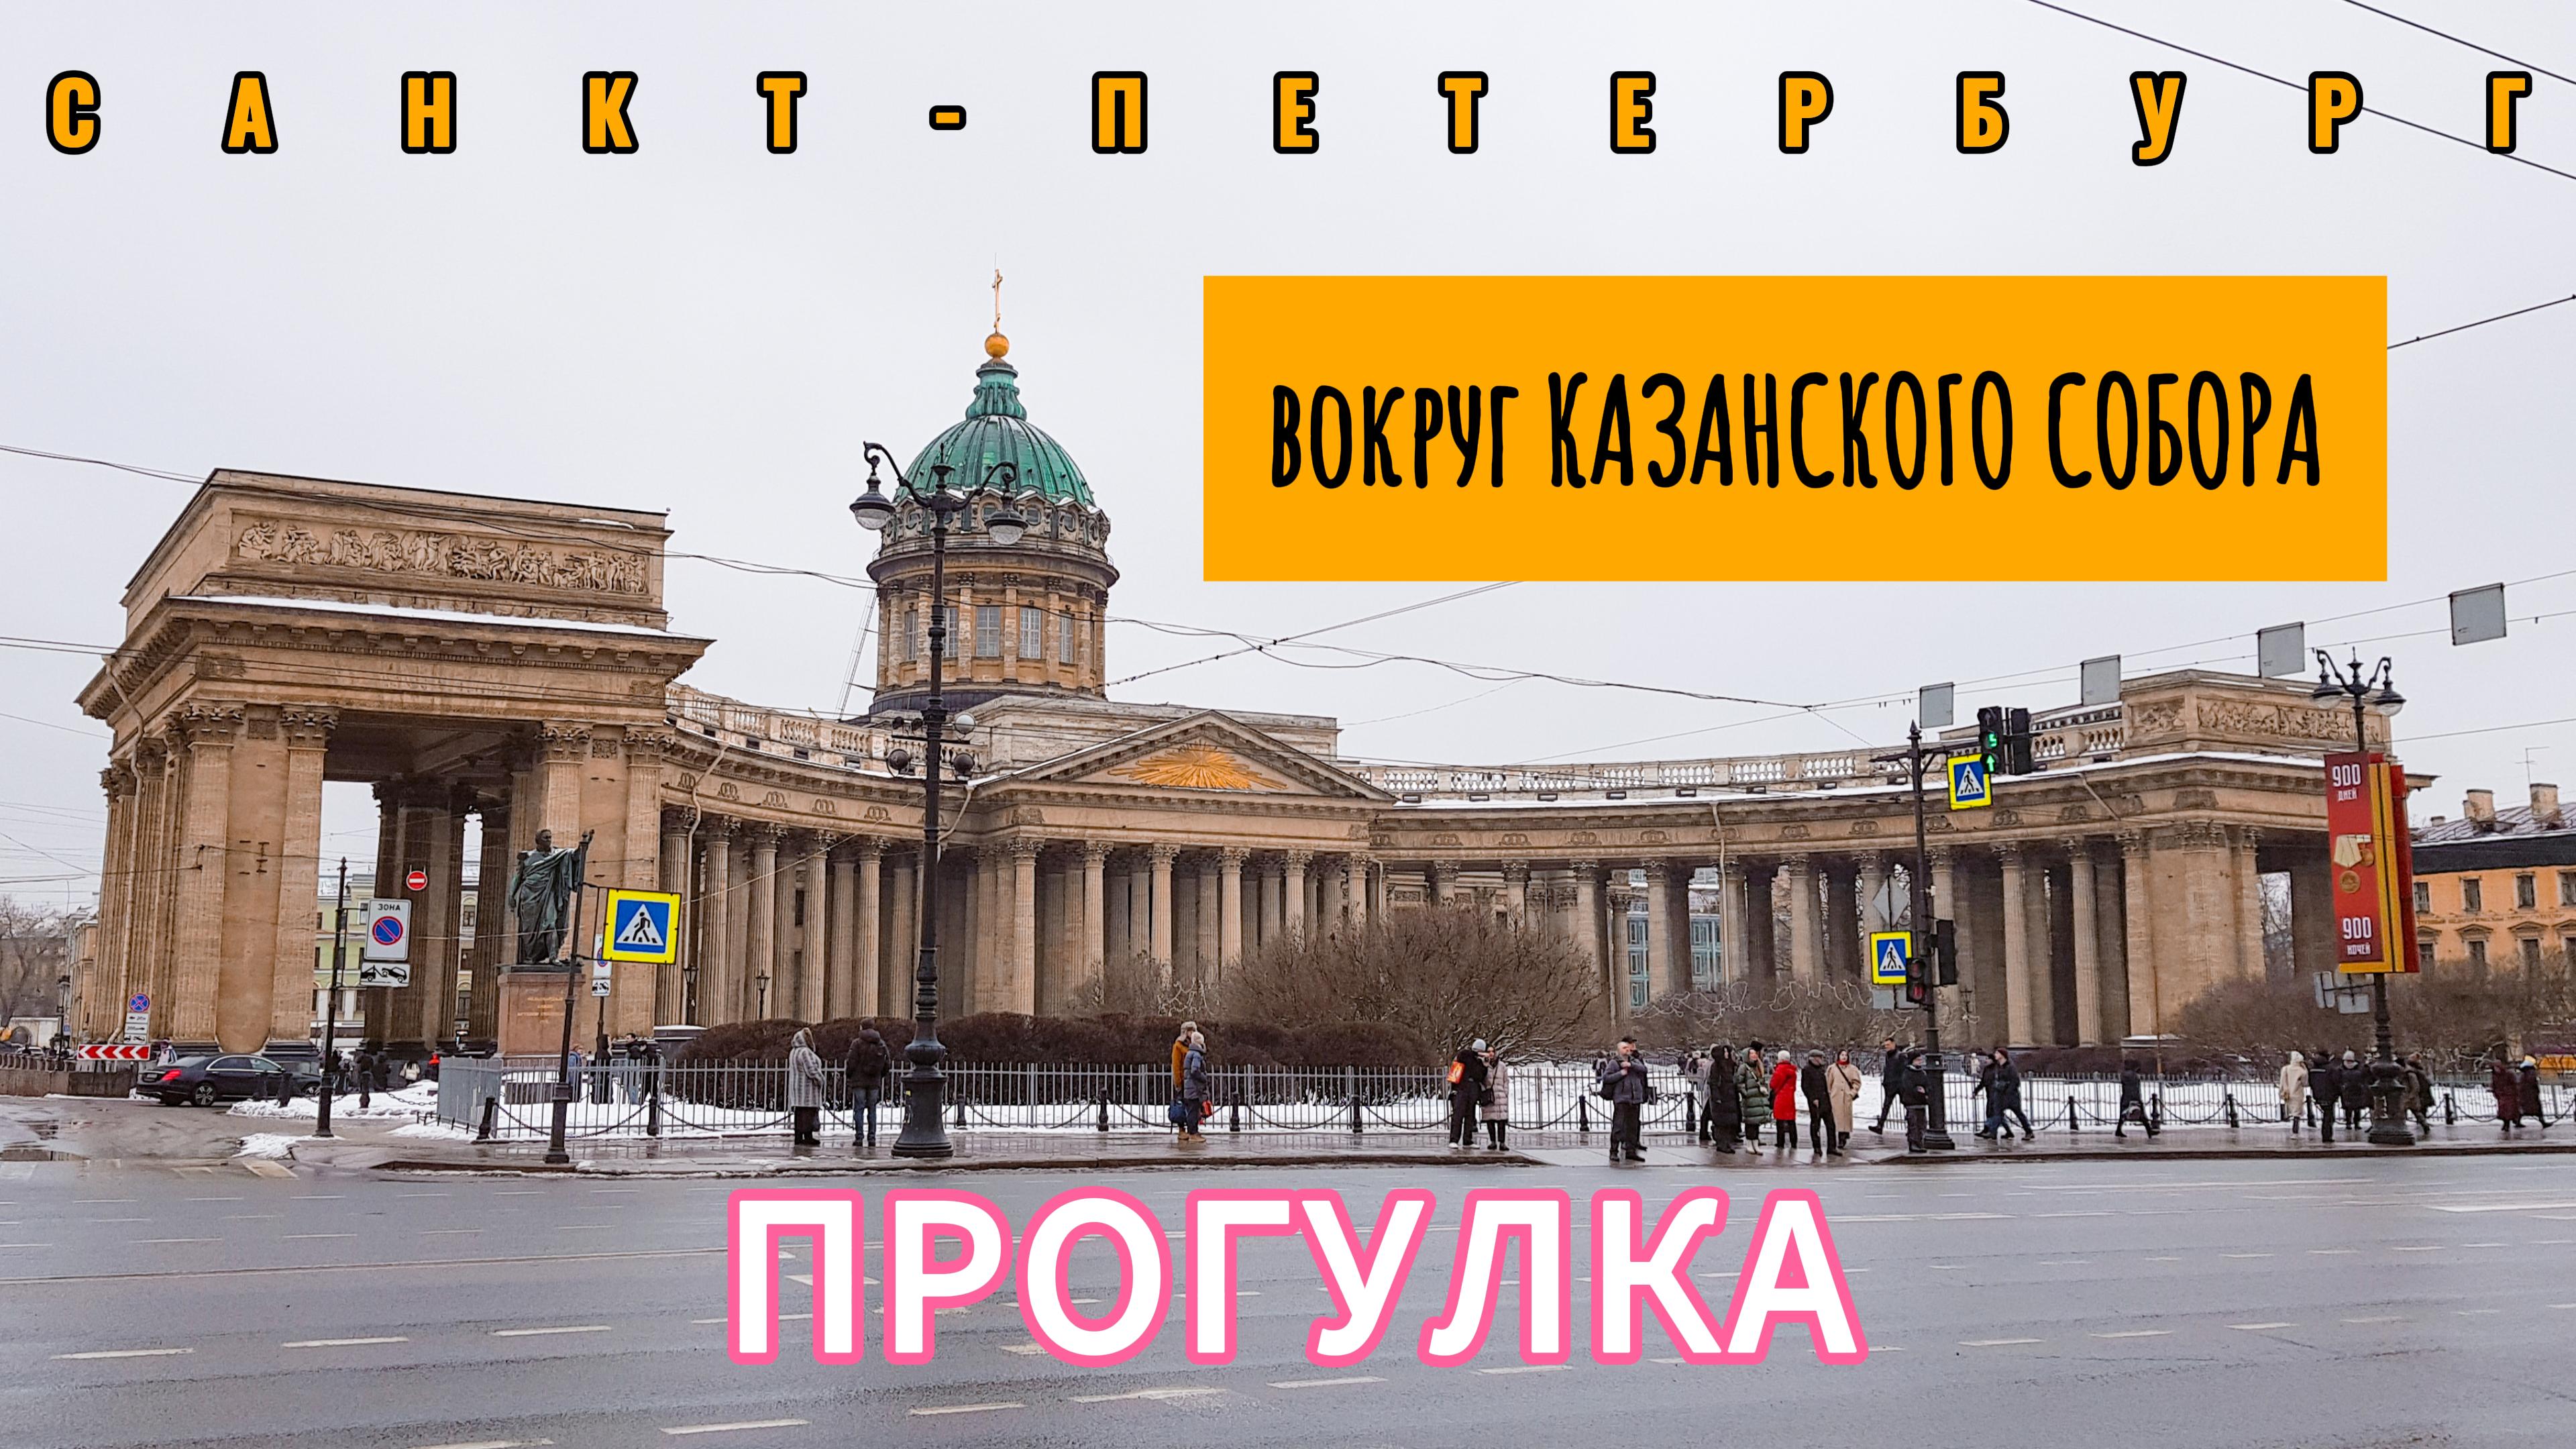 Прогулка вокруг Казанского собора. Между колонн до Невского проспекта | Санкт-Петербург | 4К